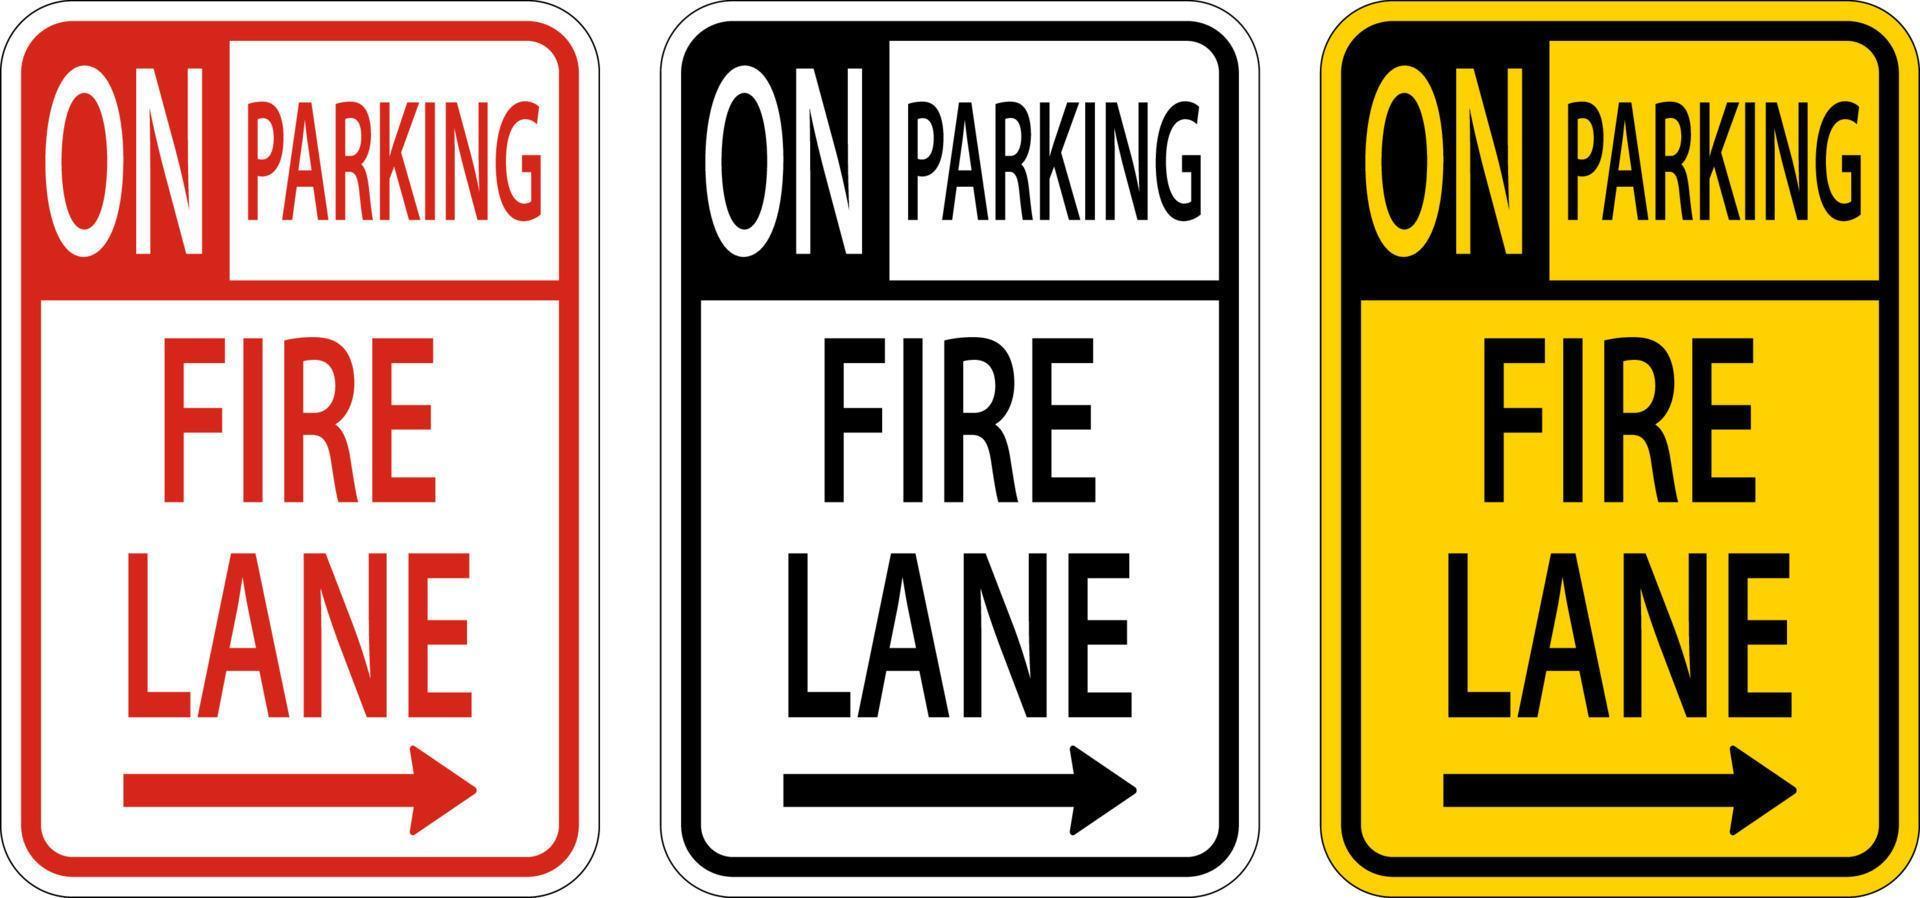 Kein Parkplatz Fire Lane rechts Pfeilzeichen auf weißem Hintergrund vektor